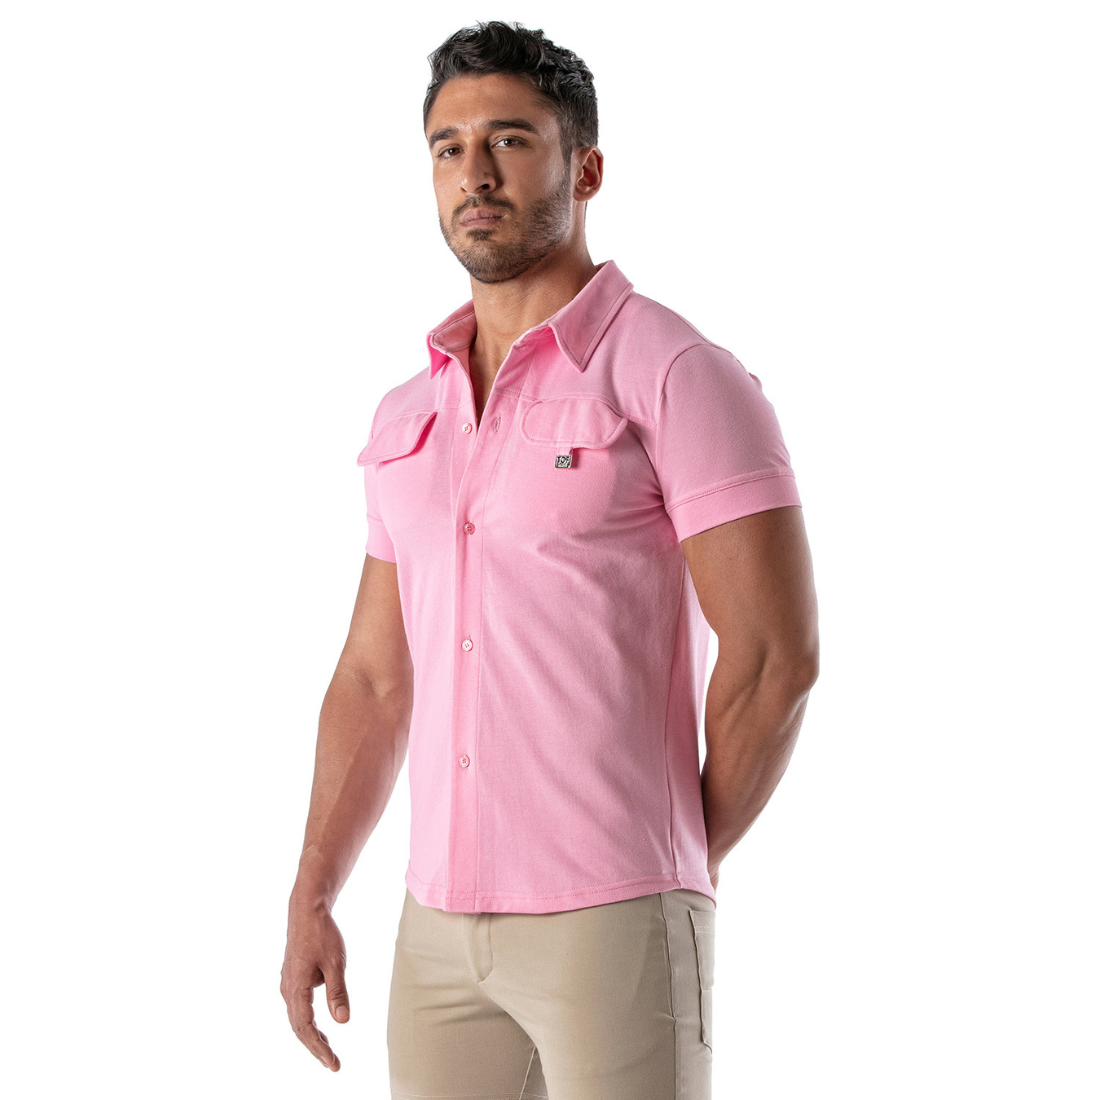 Roze slim fit overhemd met korte mouwen, ontworpen door het Franse Modehuis Tof Paris en te koop bij Flavourez.